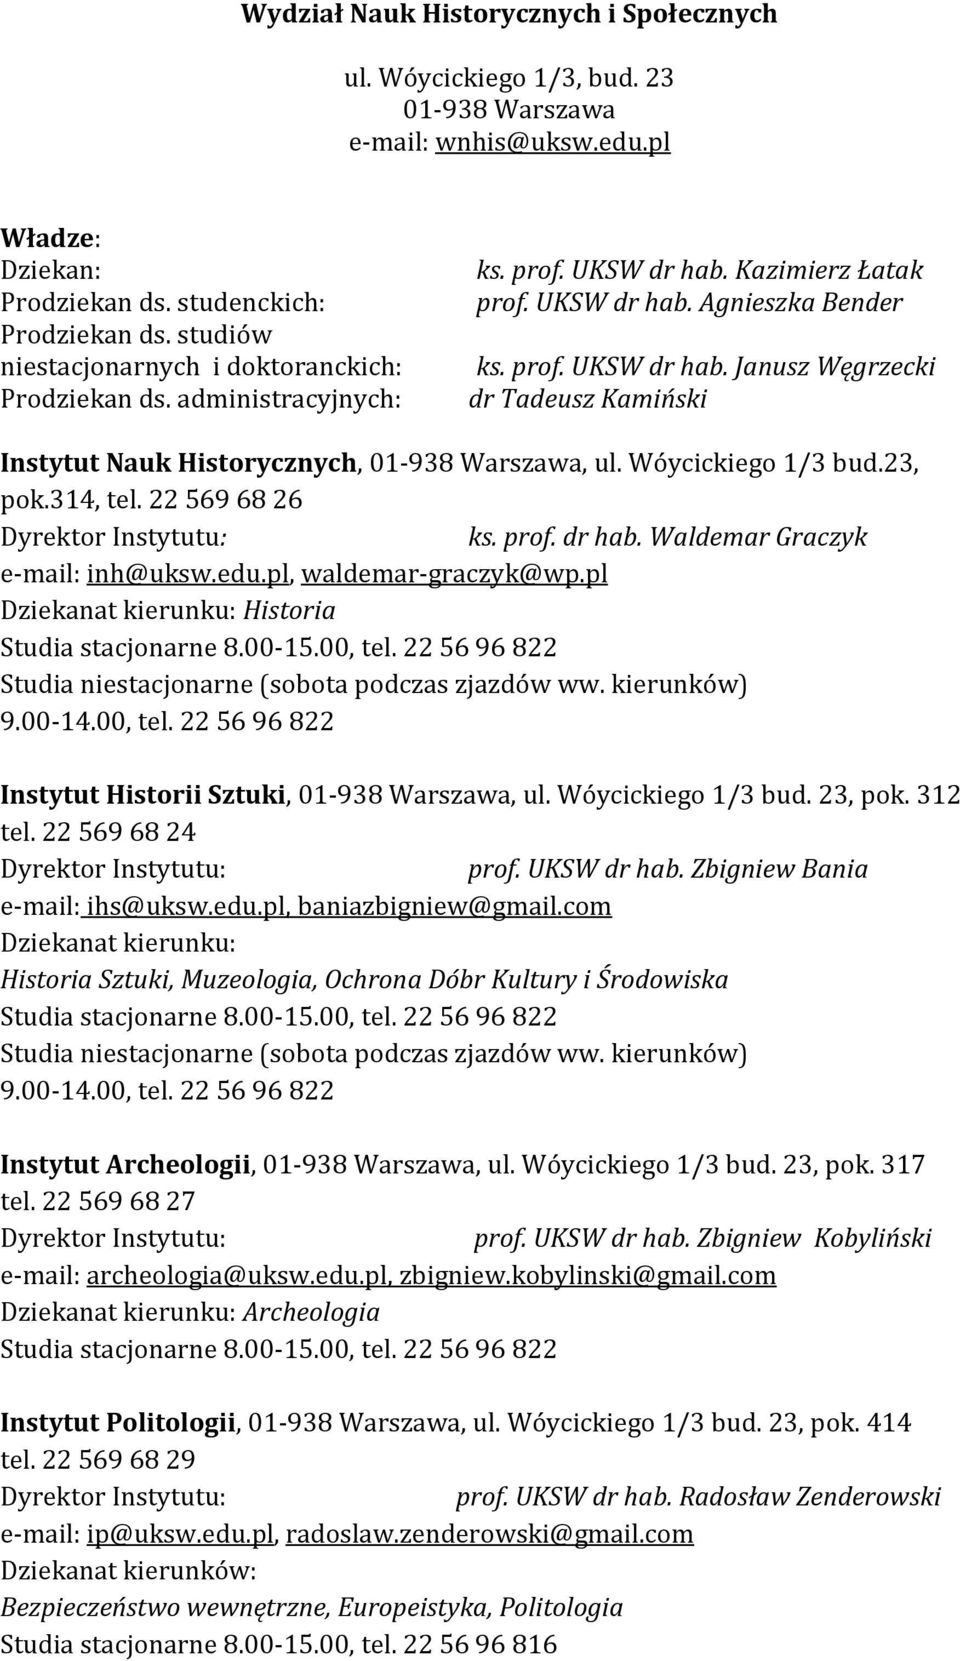 Wóycickiego 1/3 bud.23, pok.314, tel. 22 569 68 26 Dyrektor Instytutu: ks. prof. dr hab. Waldemar Graczyk e-mail: inh@uksw.edu.pl, waldemar-graczyk@wp.